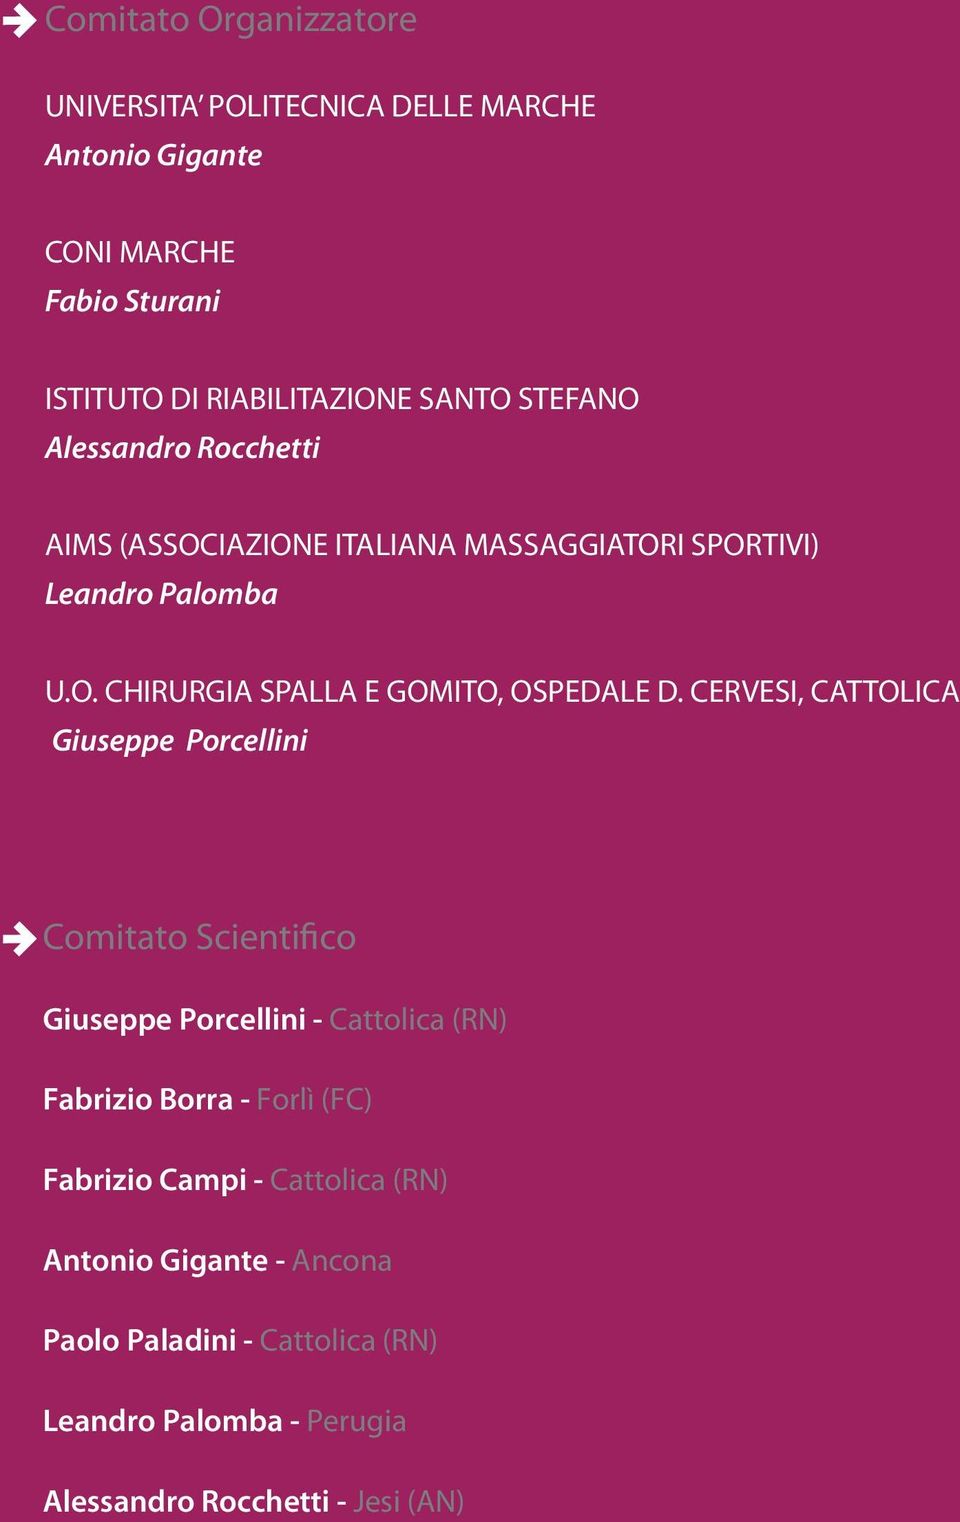 CERVESI, CATTOLICA Giuseppe Porcellini Comitato Scientifico Giuseppe Porcellini - Cattolica (RN) Fabrizio Borra - Forlì (FC) Fabrizio